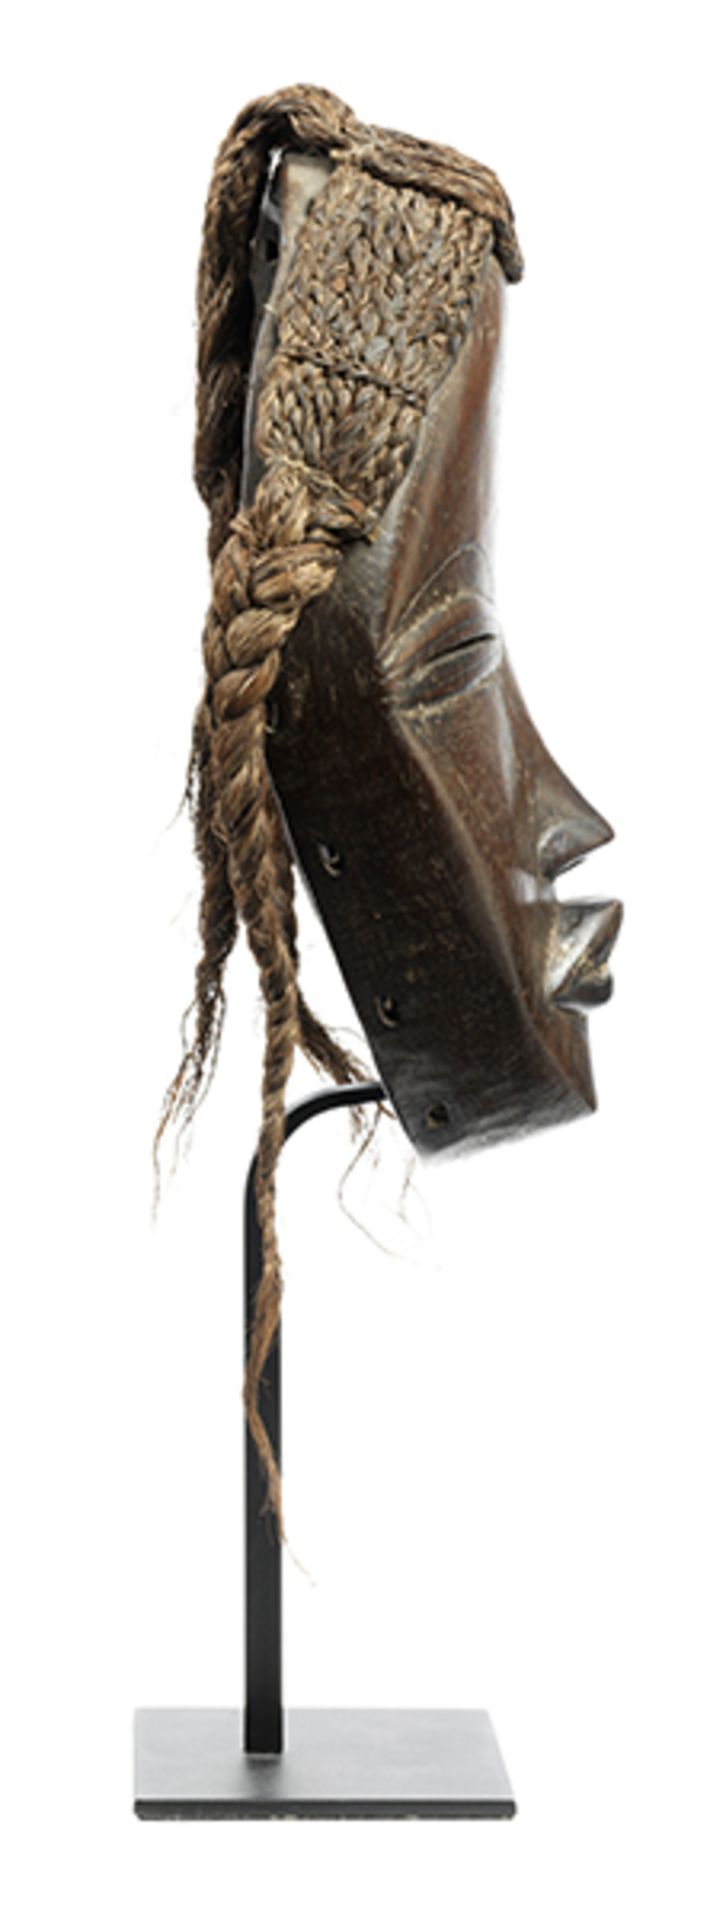 Dan-Maske Höhe: 22,5 cm. Auf Metallständer montiert, Gesamthöhe: 35,5 cm. Maske aus dunklem Holz. - Bild 2 aus 5